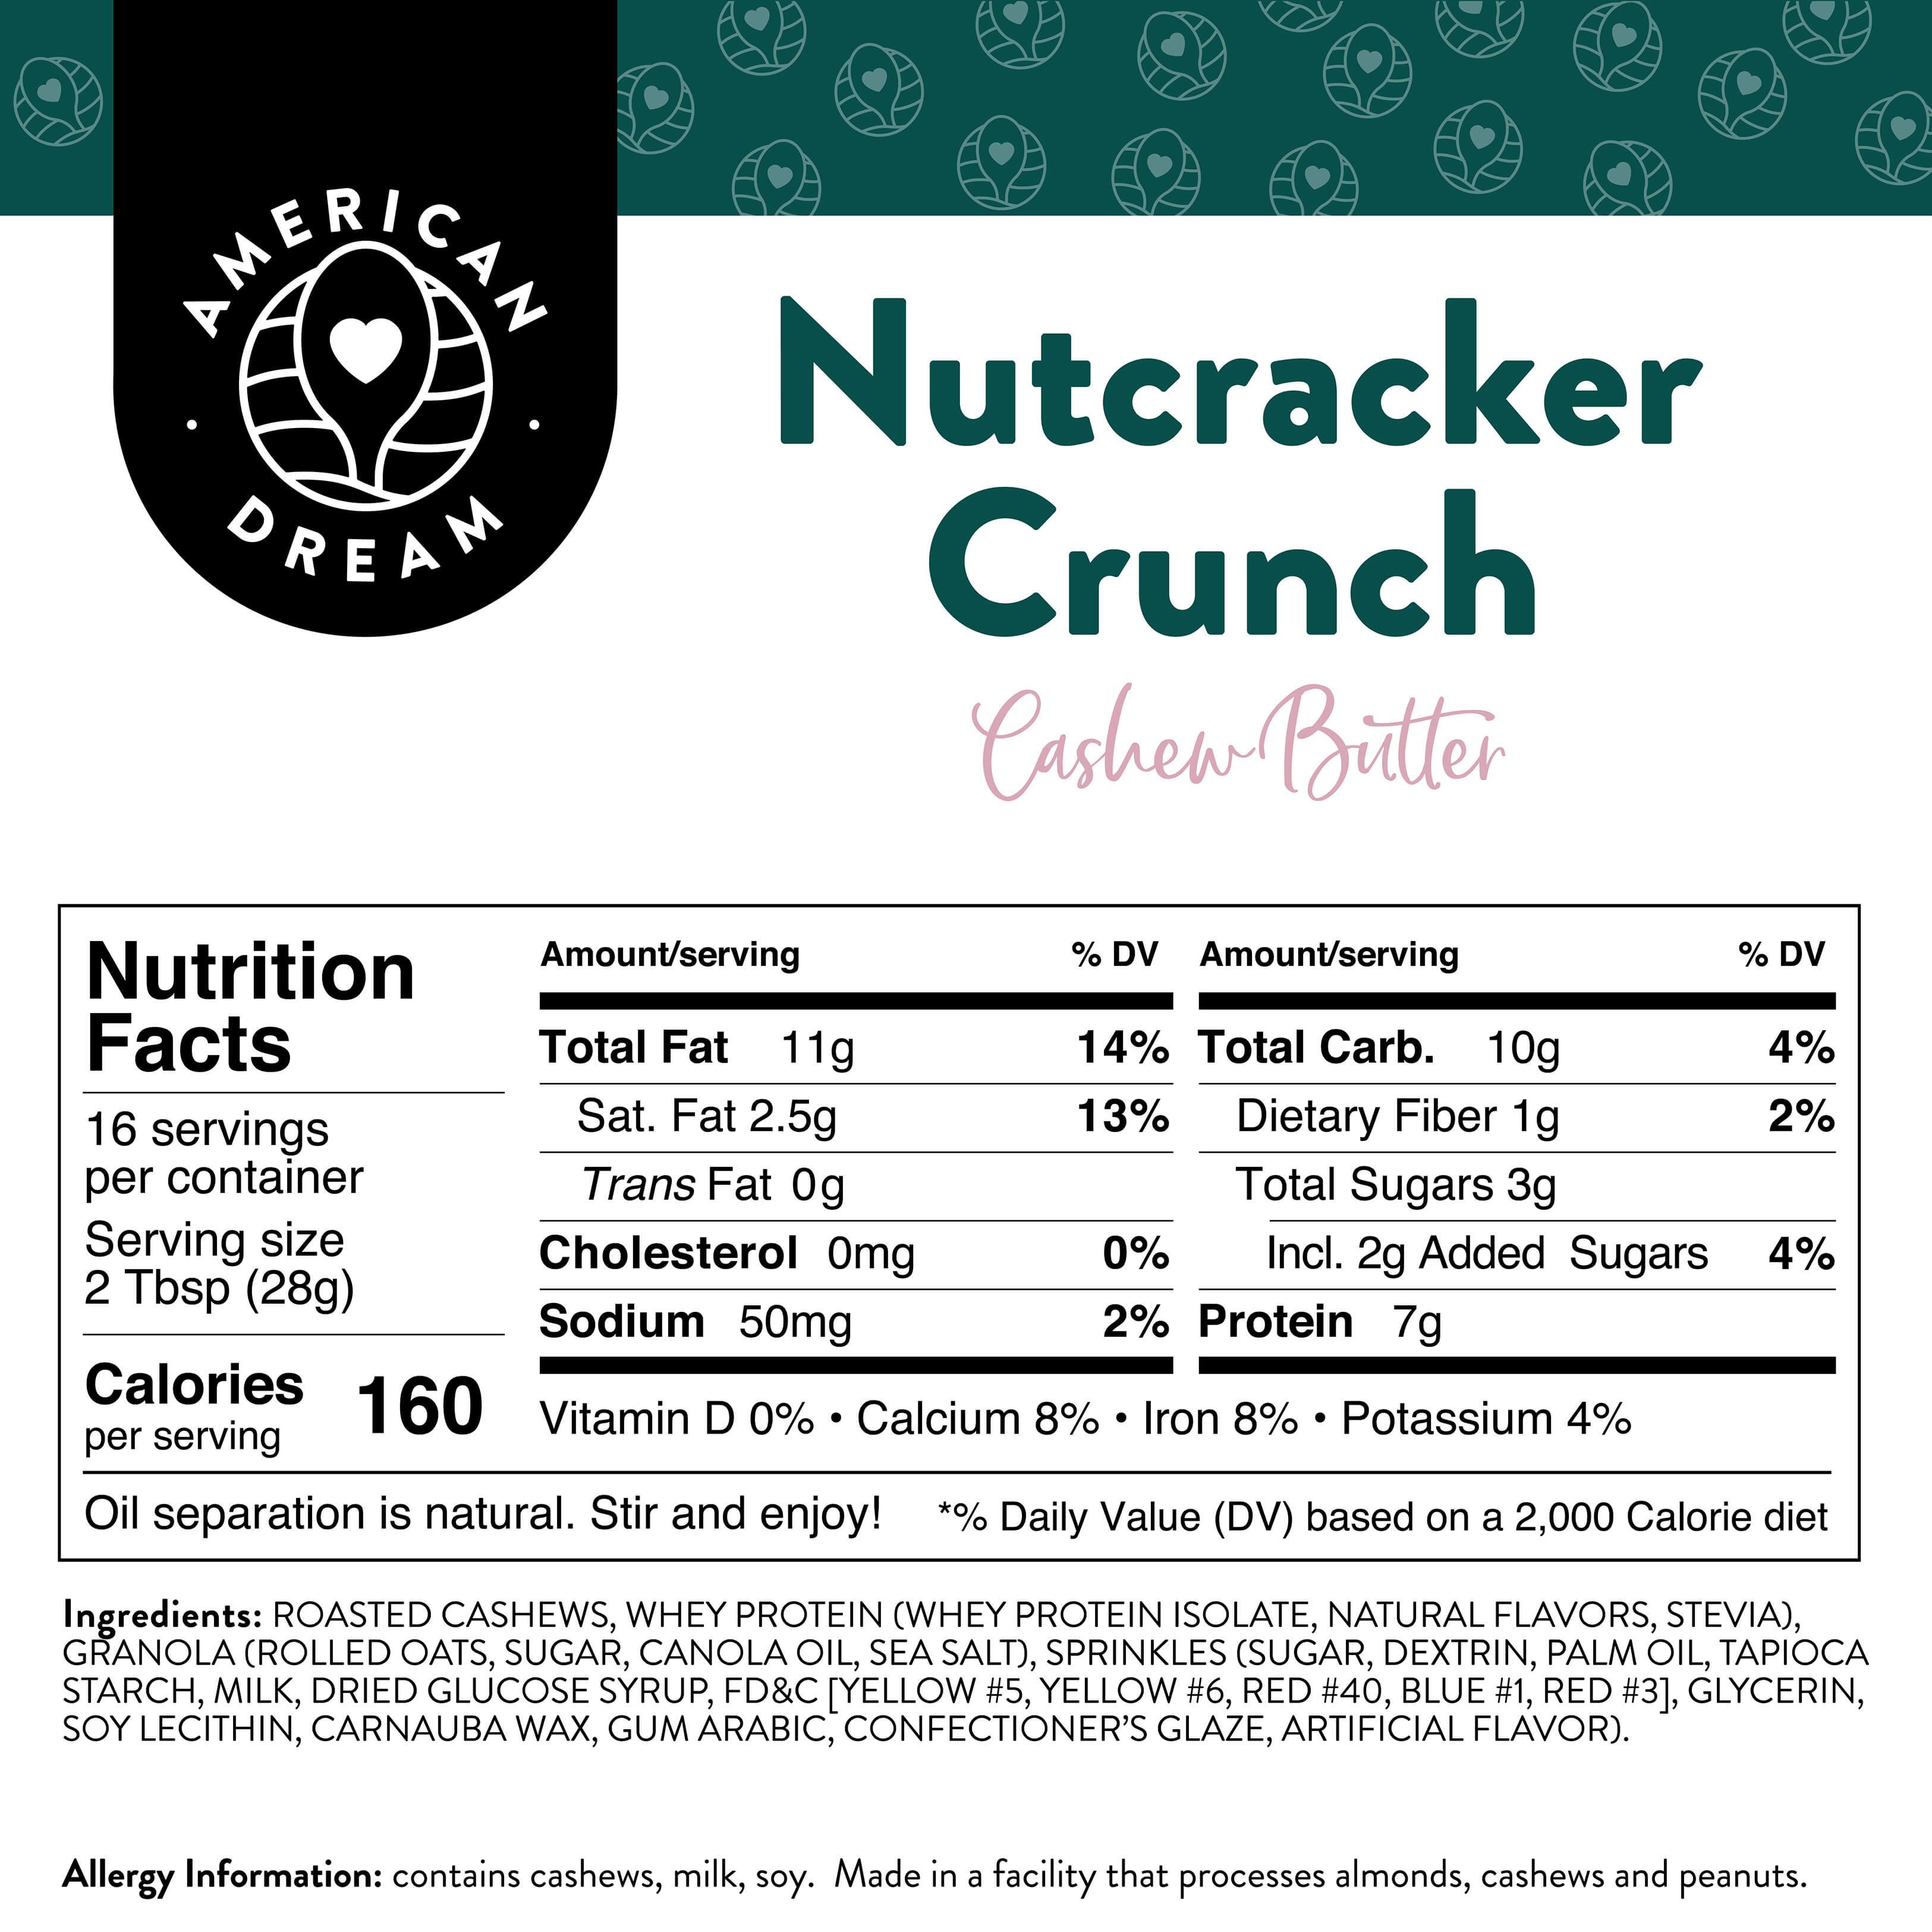 Nutcracker Crunch Cashew Butter